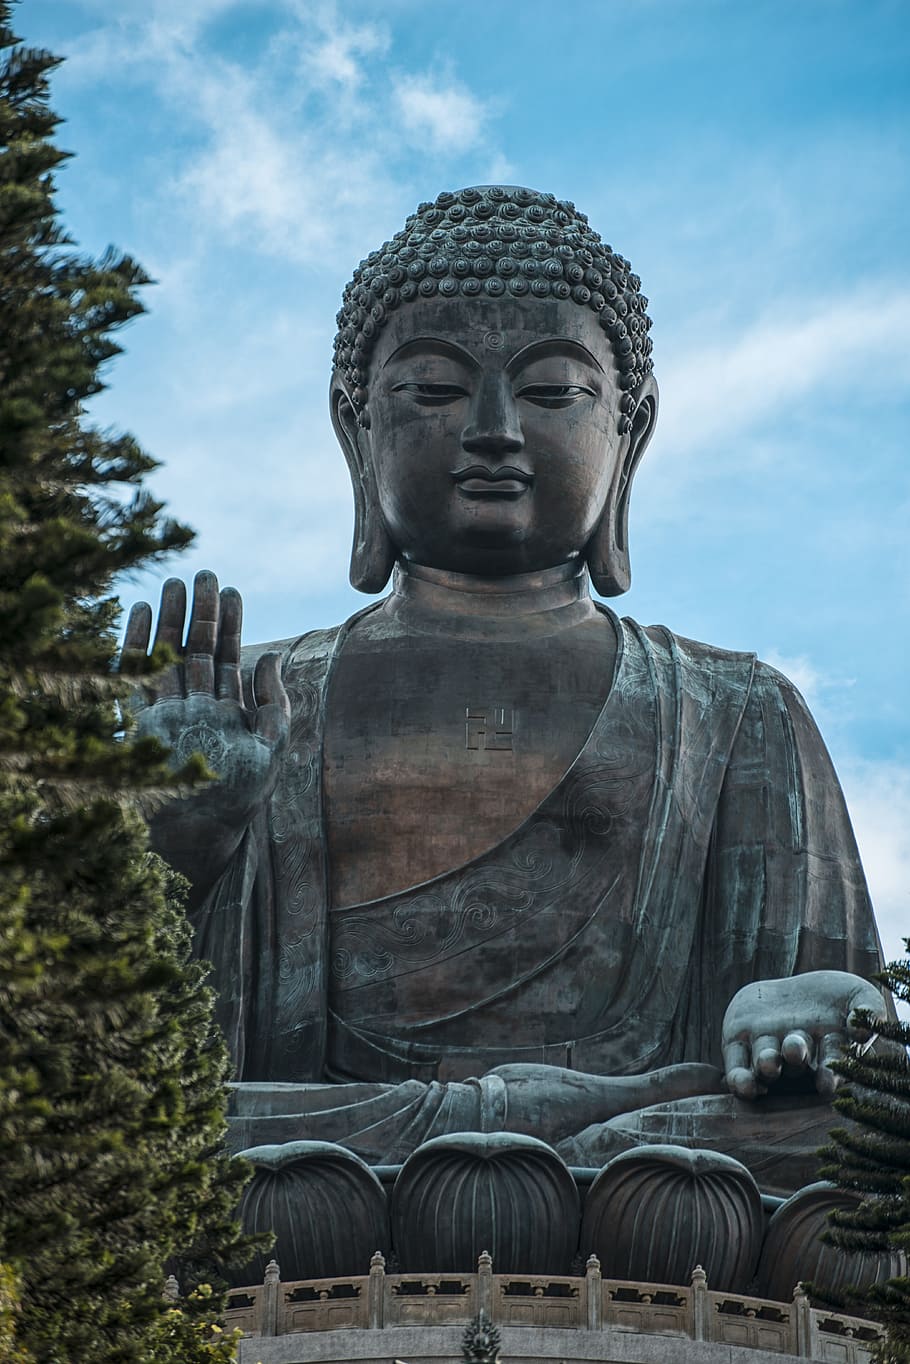 The Great Buddah of Kamakura, china, hong kong, buddha, asia, HD wallpaper